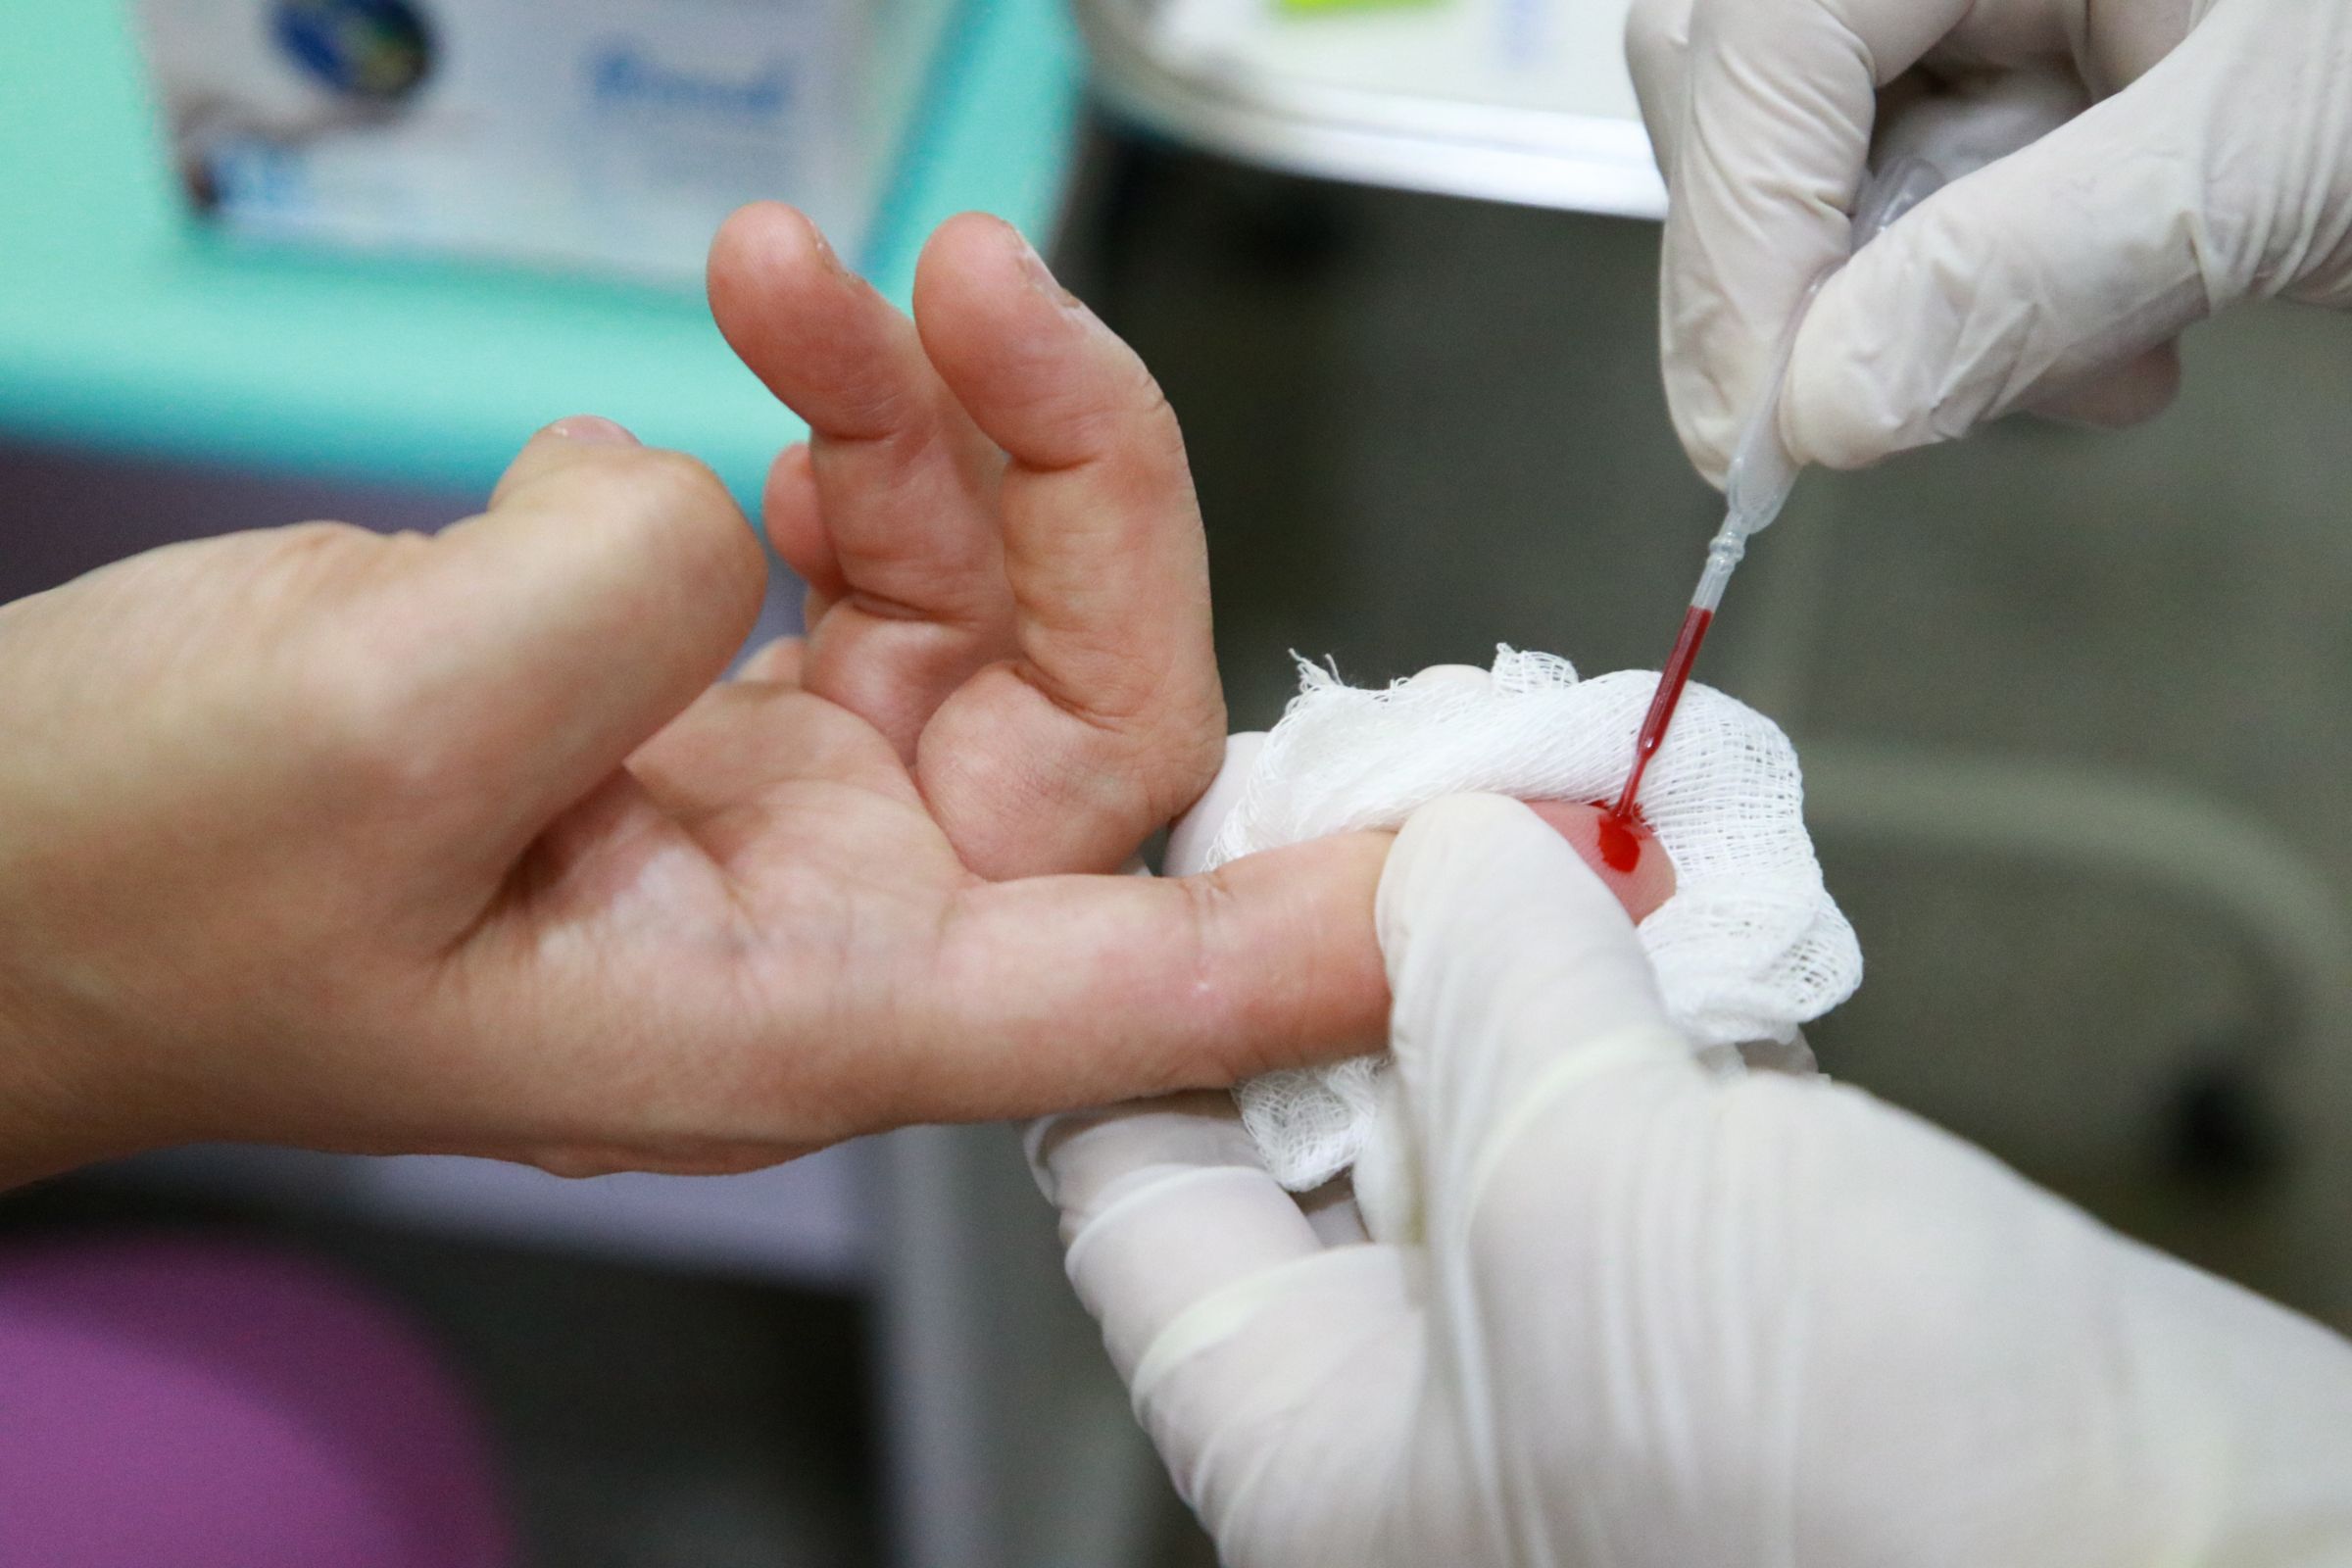 Maio Vermelho alerta para prevenção, diagnóstico e tratamento das hepatites virais